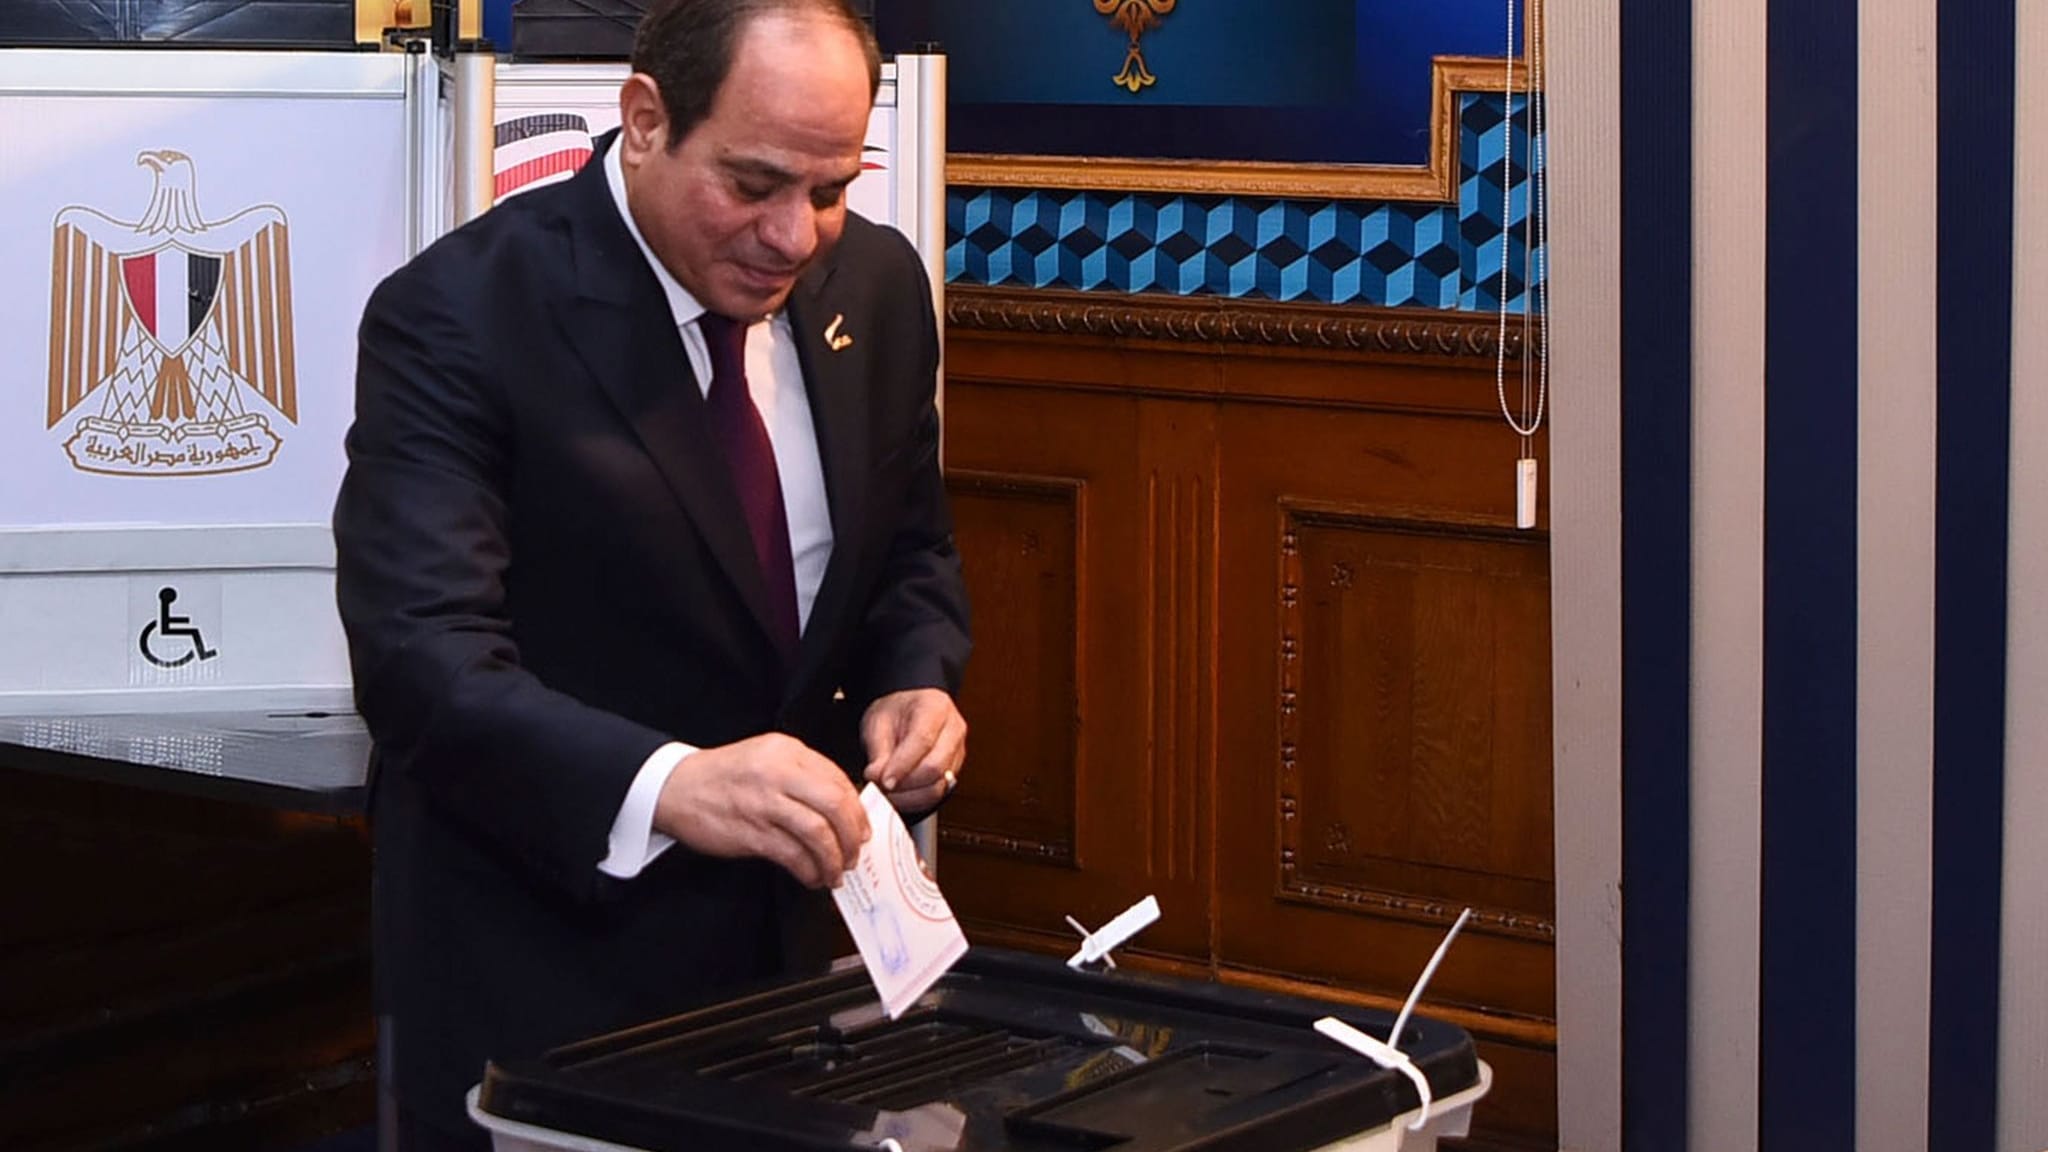 Staatsoberhaupt | Ägypten für Al-Sisi: Sichere Wahl in unsicheren Zeiten